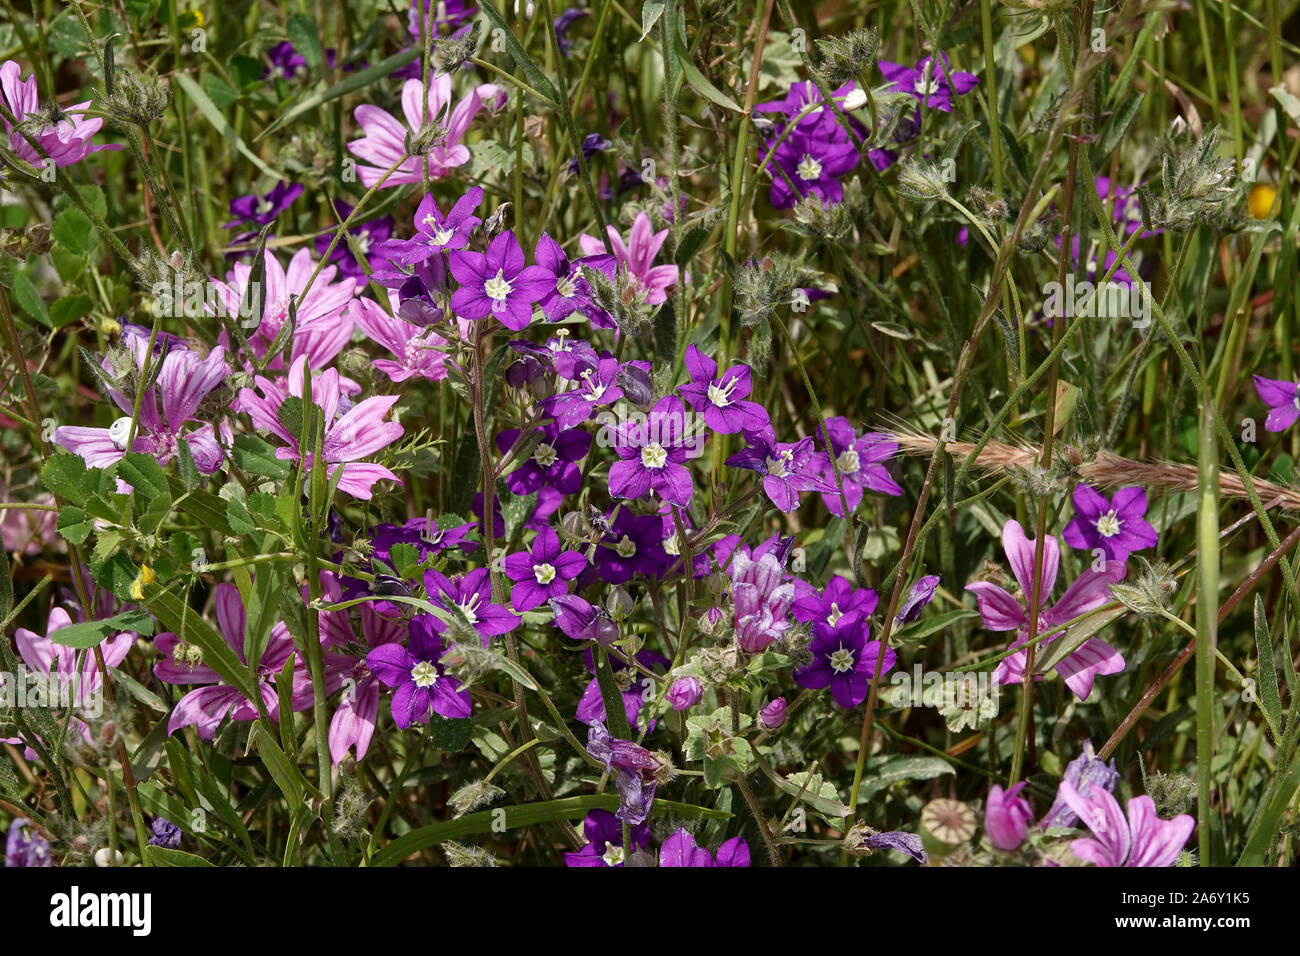 Legousia among hollyhock flowers Stock Photo